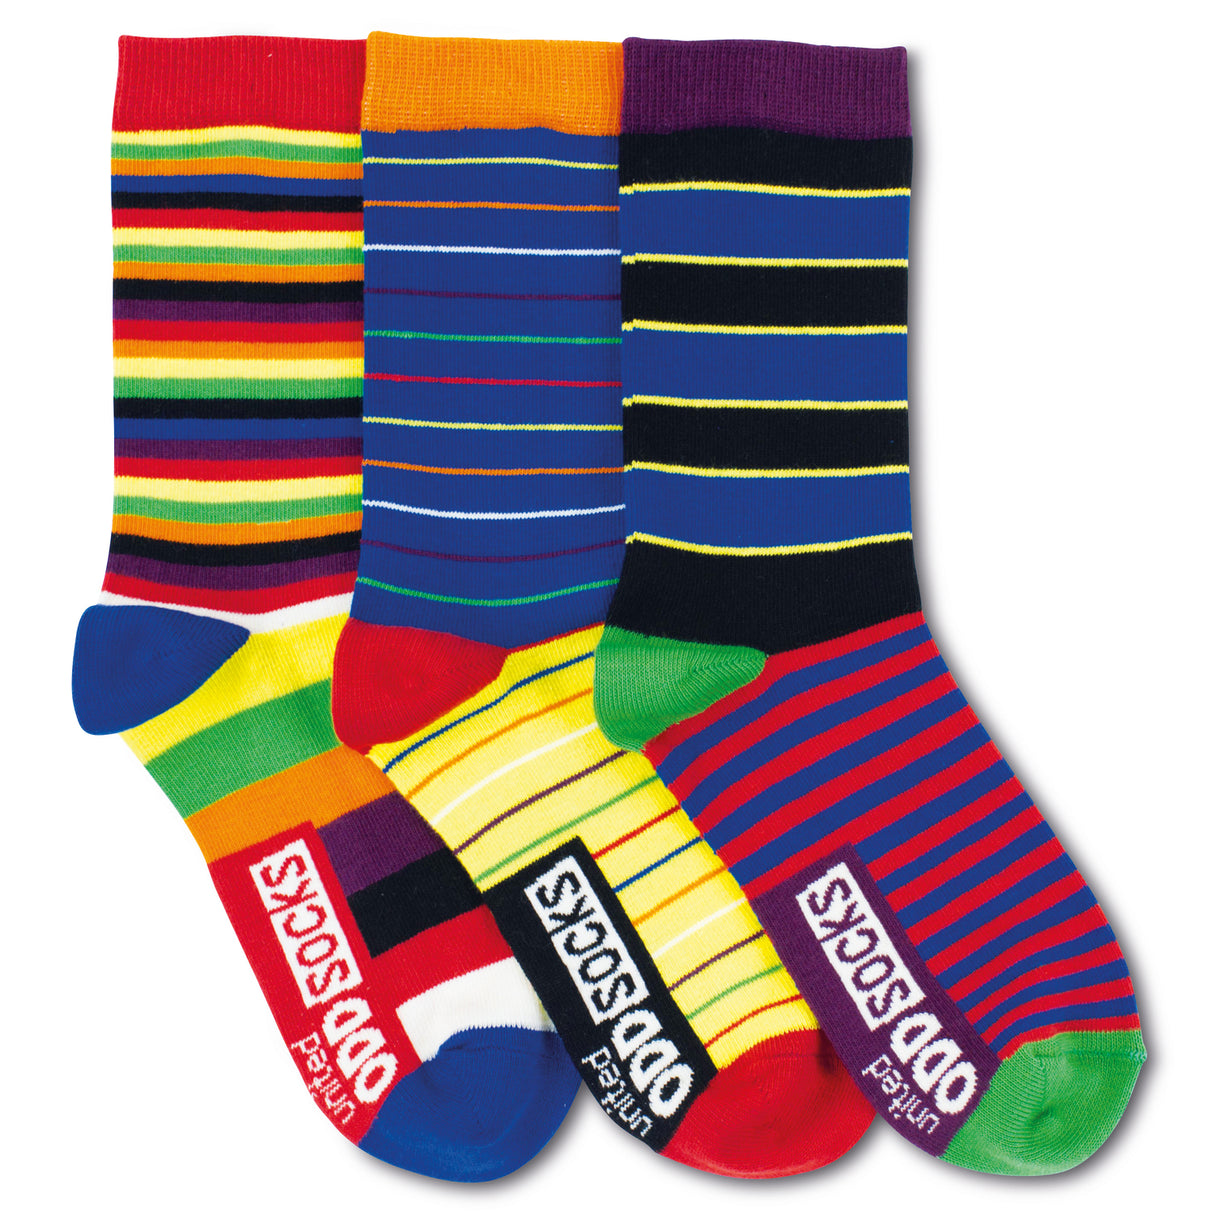 3er Set Kringel und Streifen Socken | Jungen Socken kleiden | Jetzt kaufen!  –